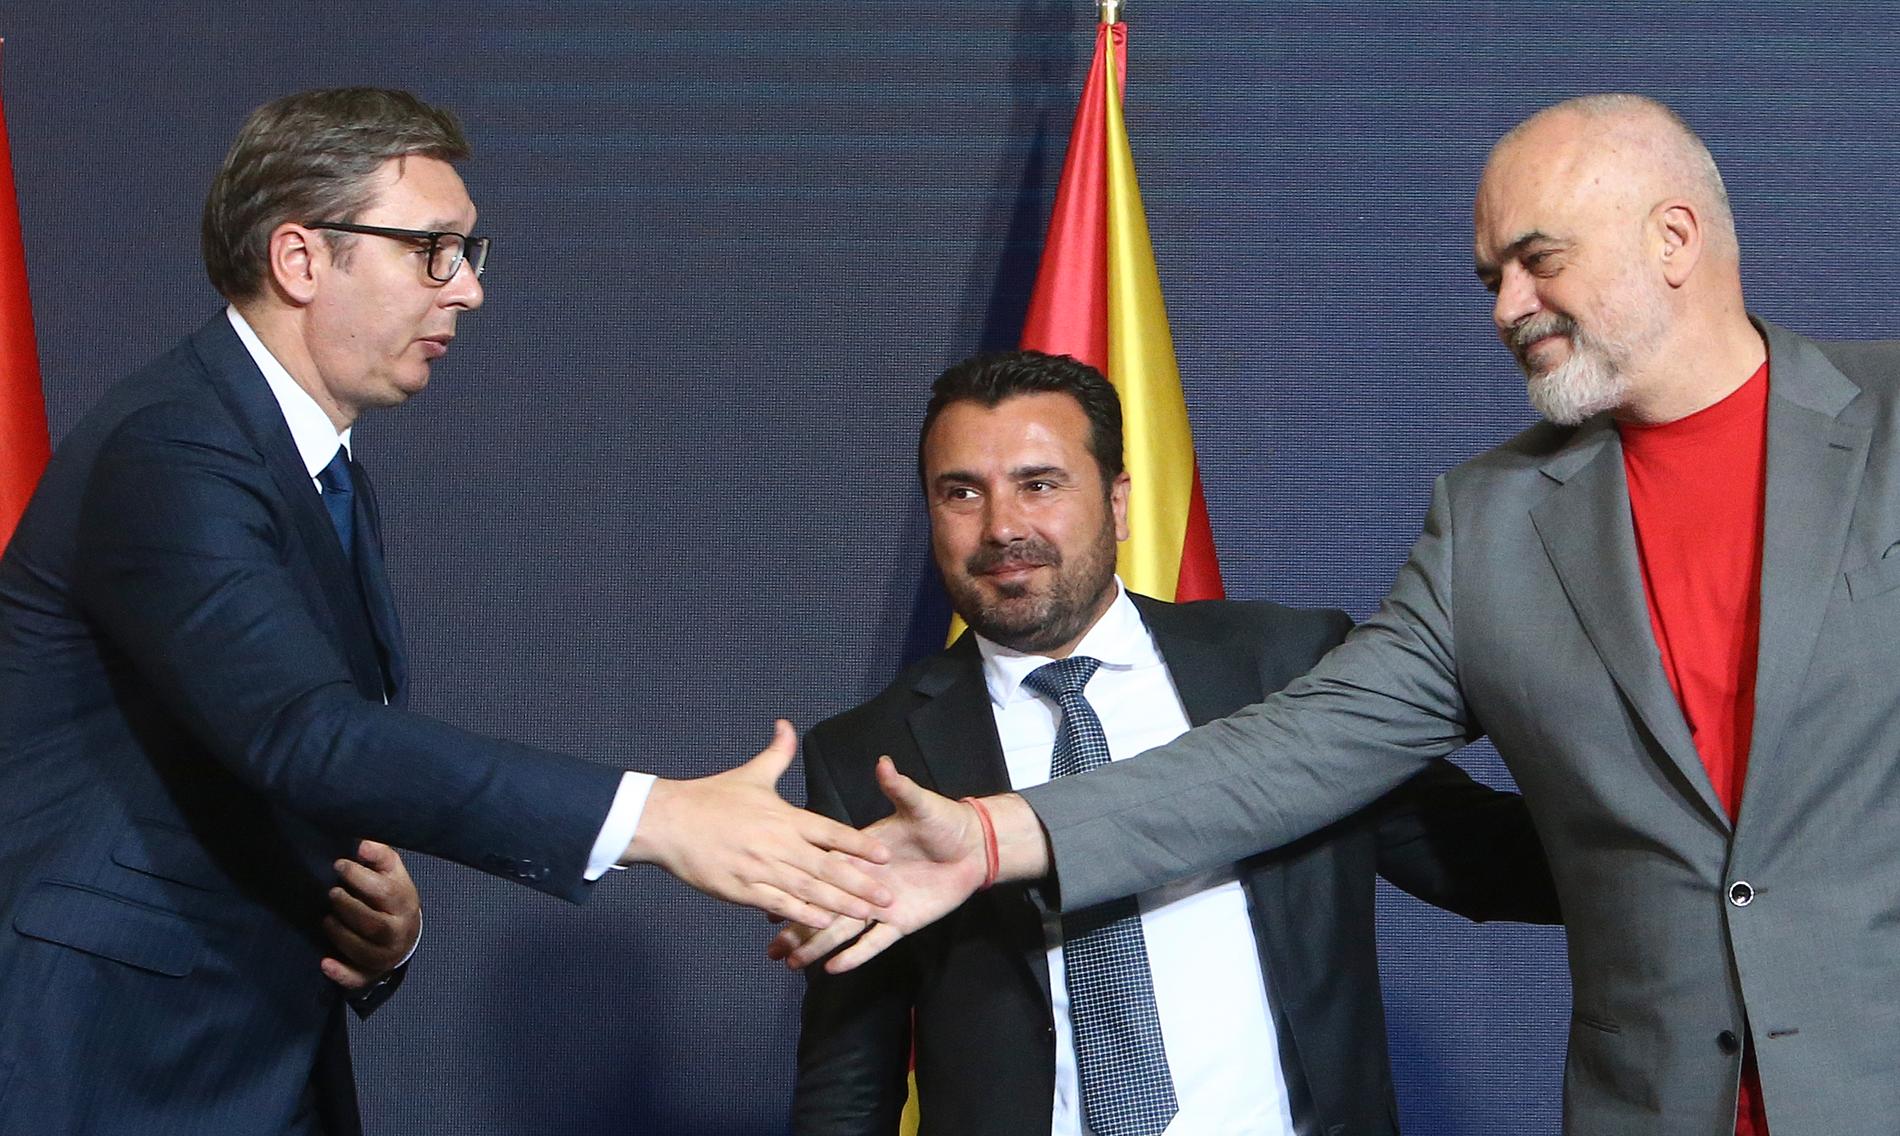 Serbiens president Aleksandar Vucić (till vänster) och Albaniens premiärminister Edi Rama (till höger) skakar hand, efter undertecknandet av tre samarbetsavtal. I mitten Nordmakedoniens premiärminister Zoran Zaev.